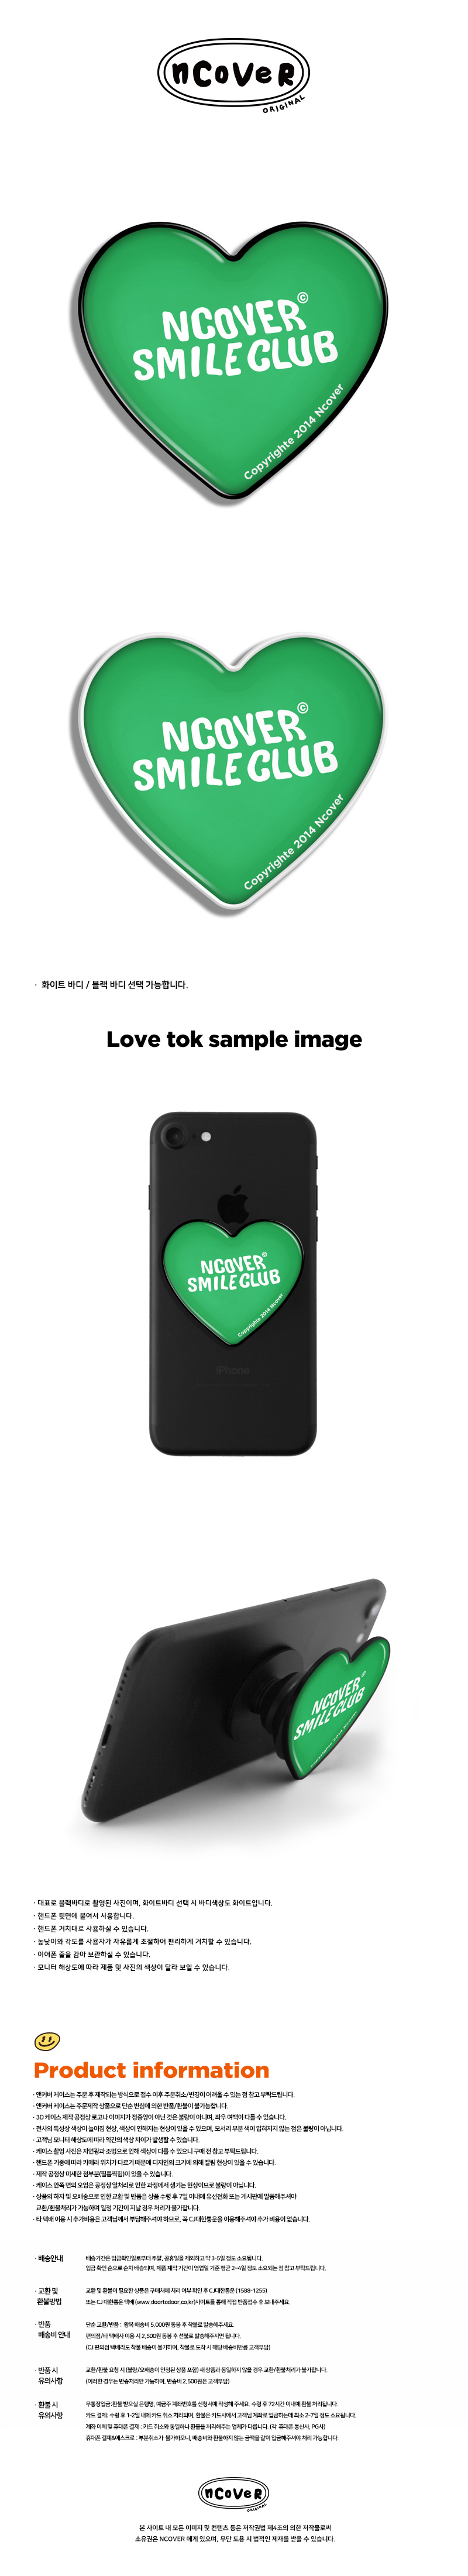  Smile club-green(heart tok)  10,000원 - 바이인터내셔널주식회사 디지털, 모바일 액세서리, 거치대/홀더, 스마트톡/스마트링 바보사랑  Smile club-green(heart tok)  10,000원 - 바이인터내셔널주식회사 디지털, 모바일 액세서리, 거치대/홀더, 스마트톡/스마트링 바보사랑